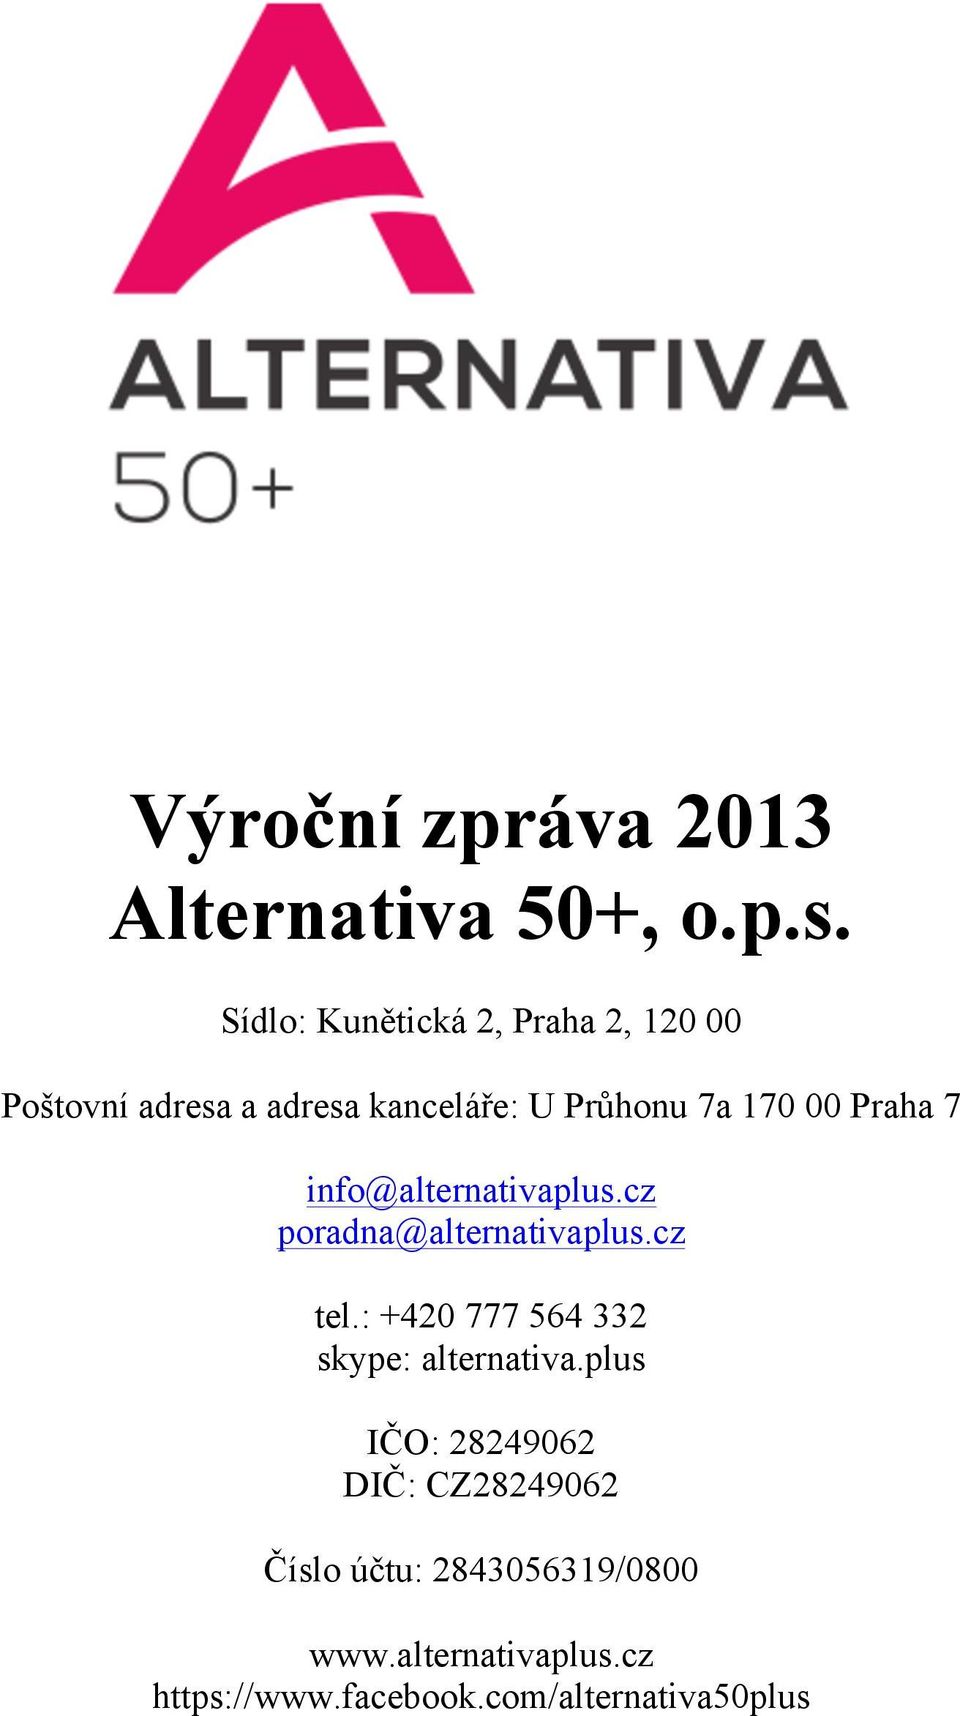 Praha 7 info@alternativaplus.cz poradna@alternativaplus.cz tel.